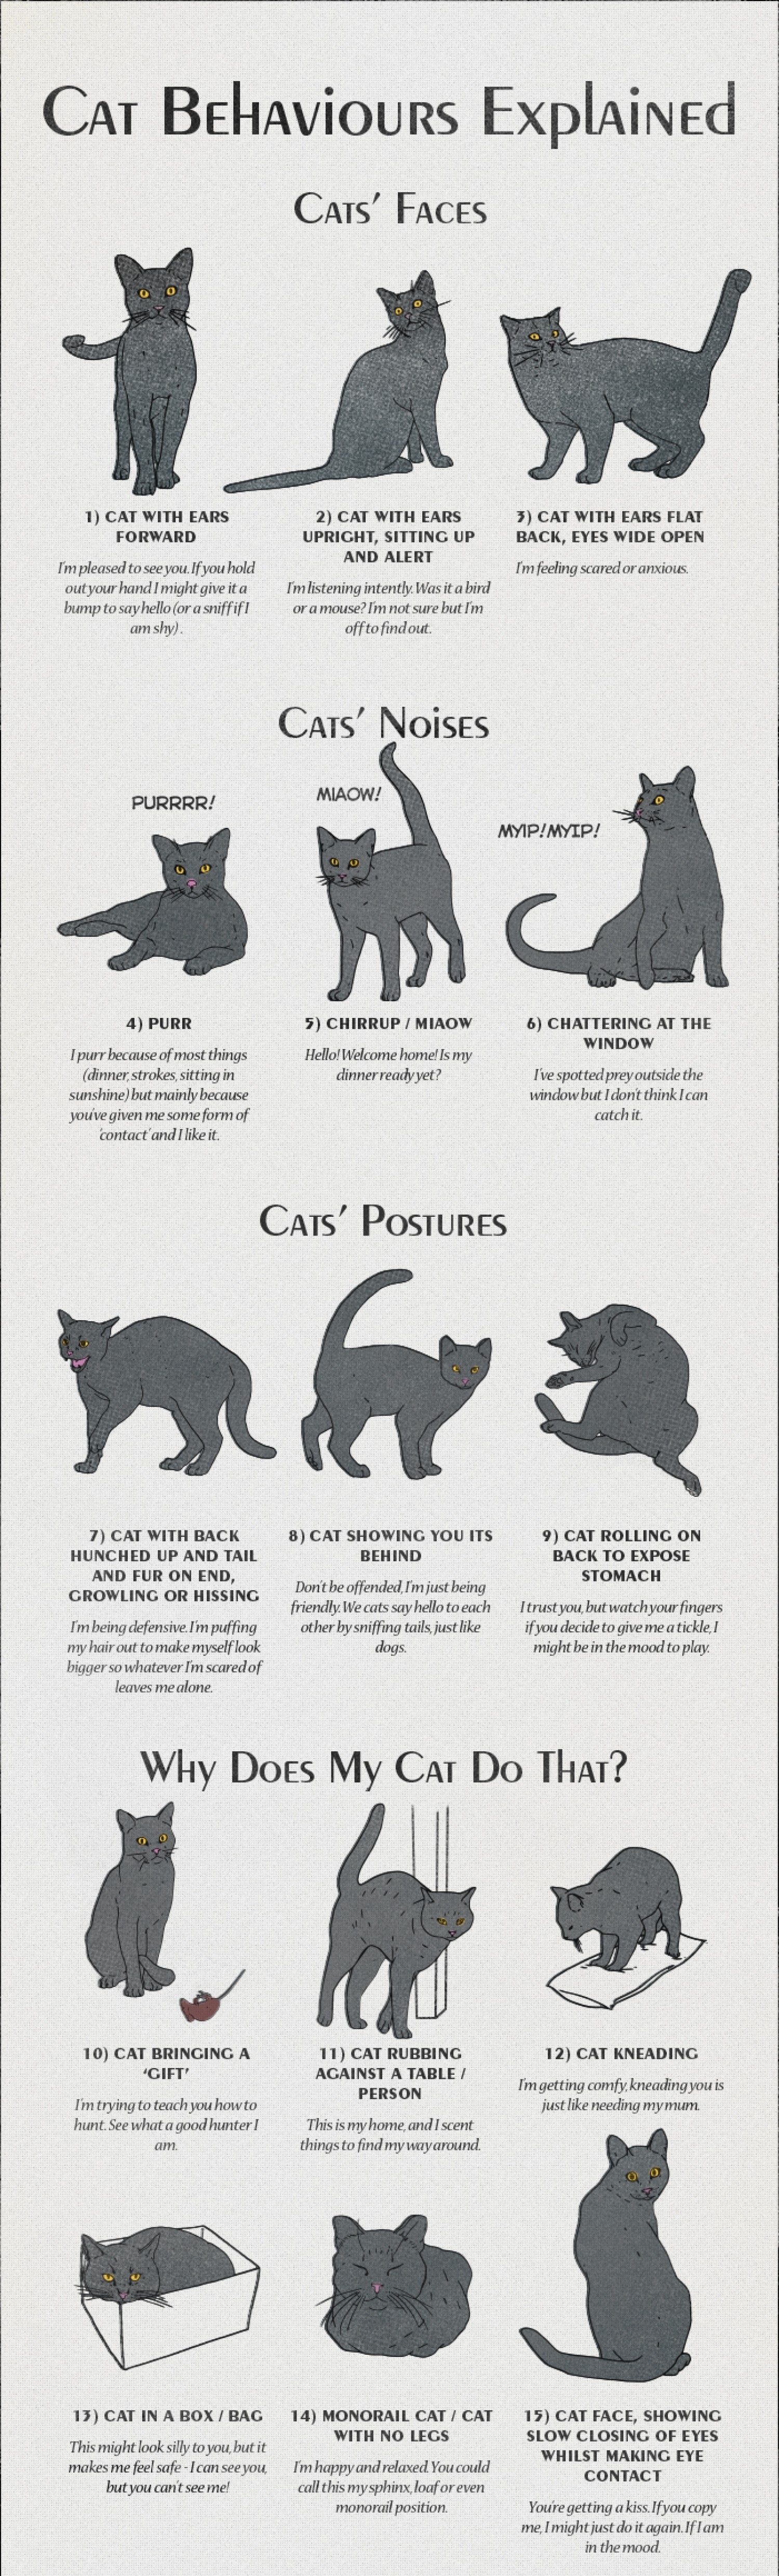 cat-behaviours-explained_54379f8f5d33f_w1500.jpg